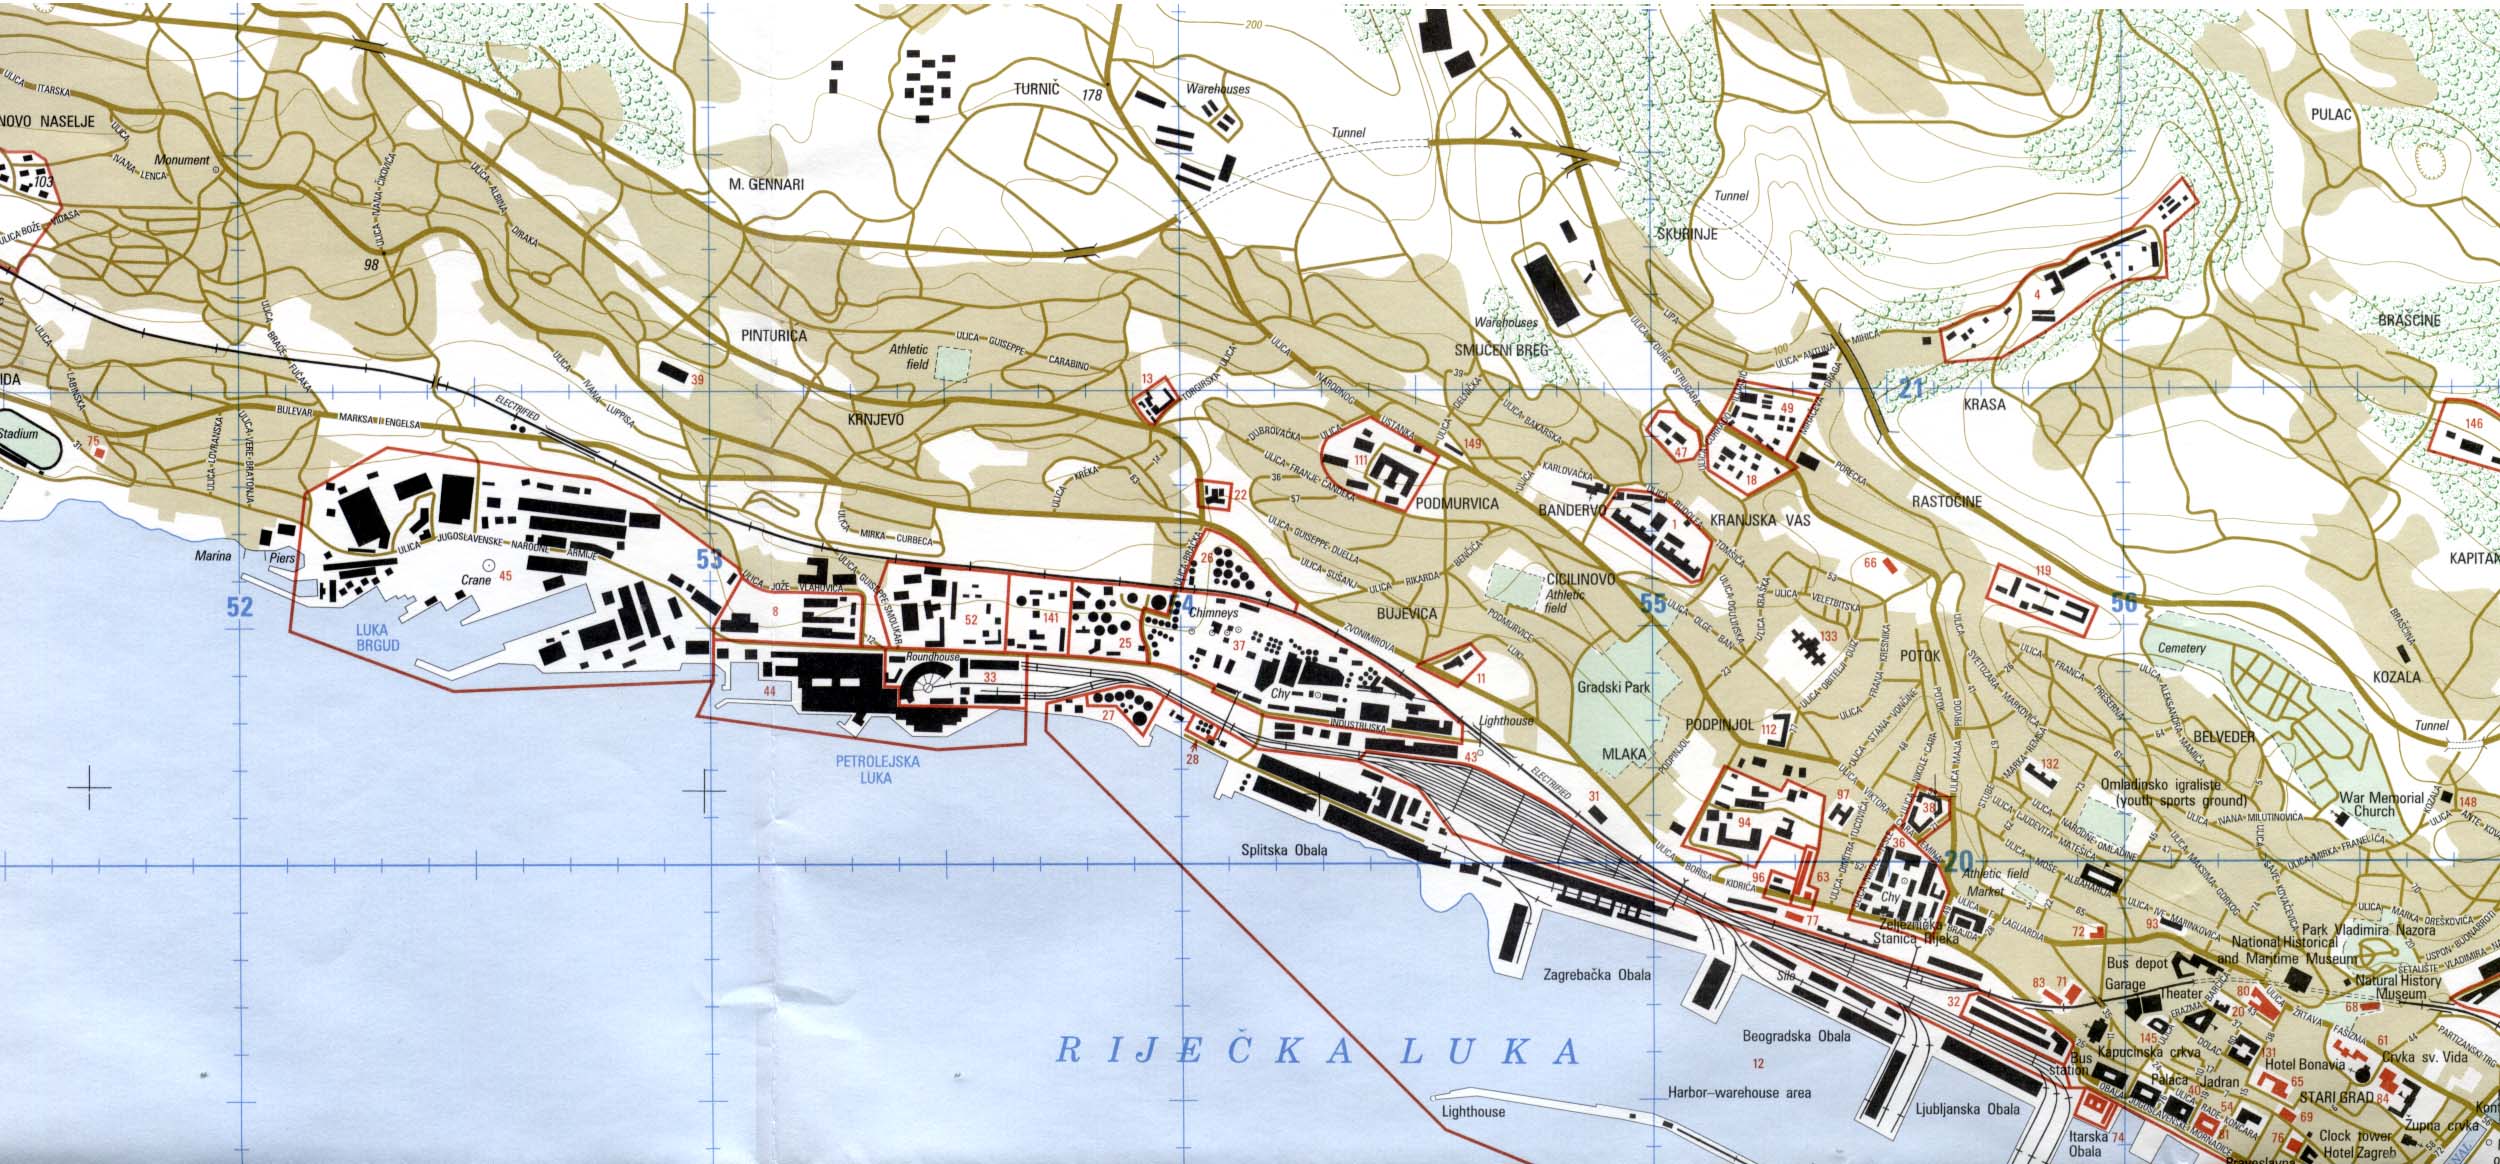 google karta rijeke Free Croatia Maps google karta rijeke